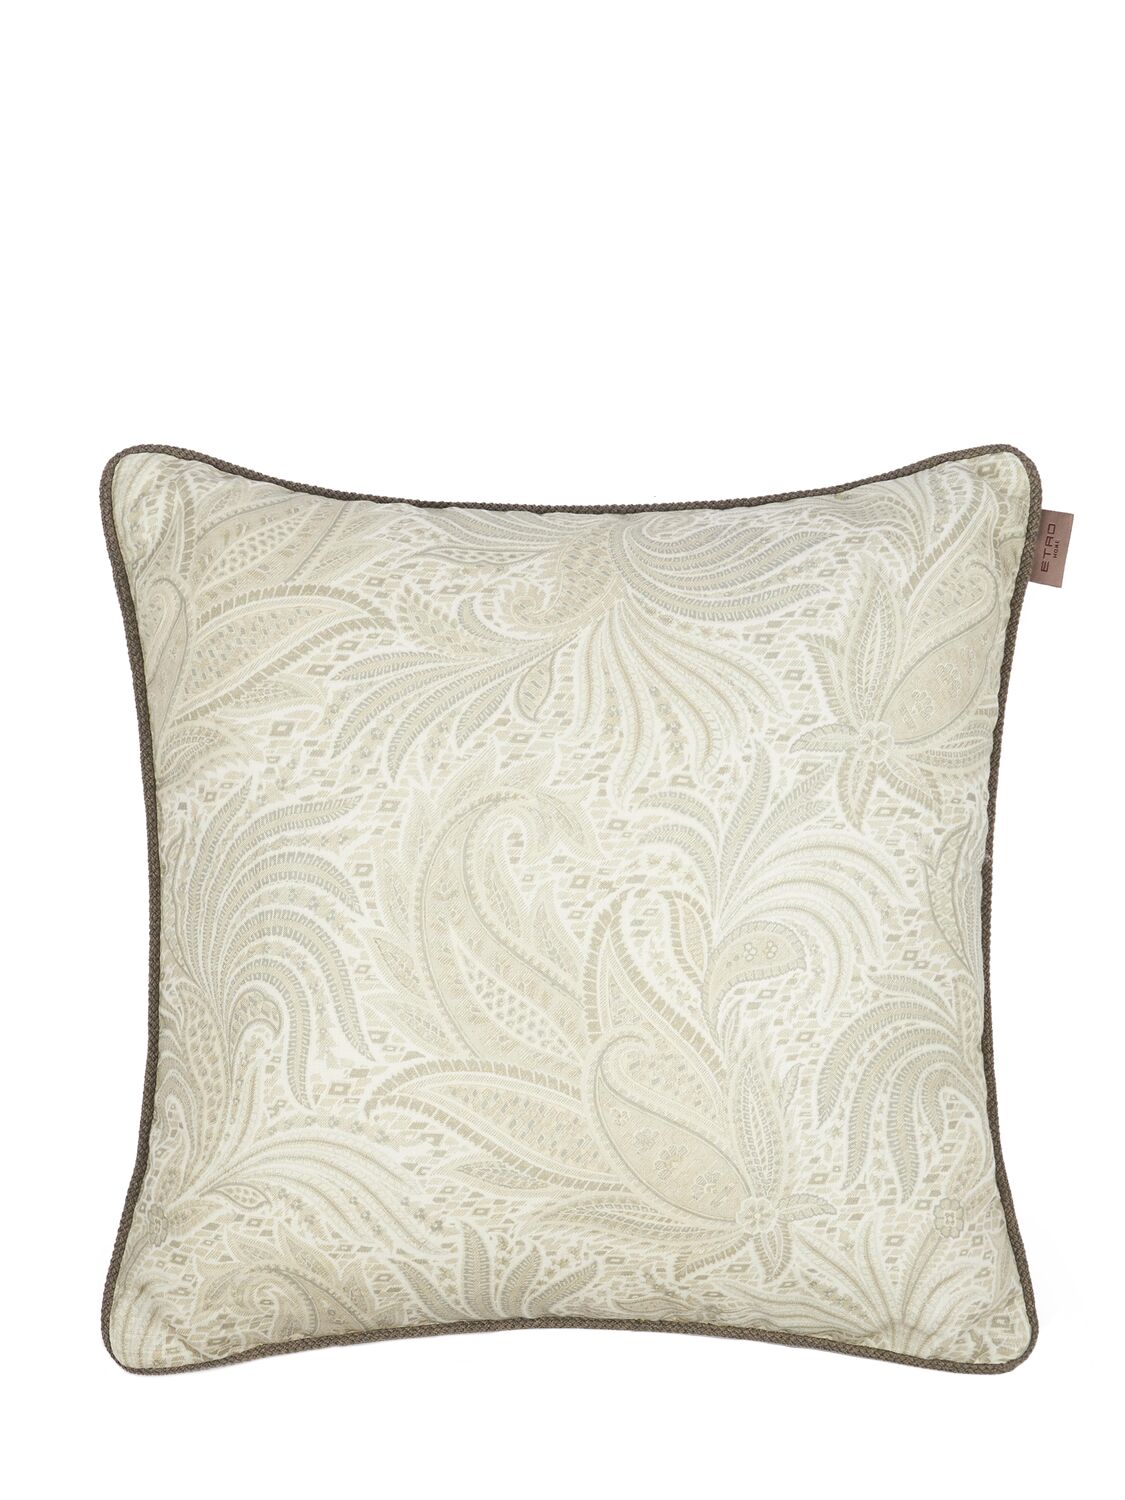 Image of Calathea Embroidered Cushion